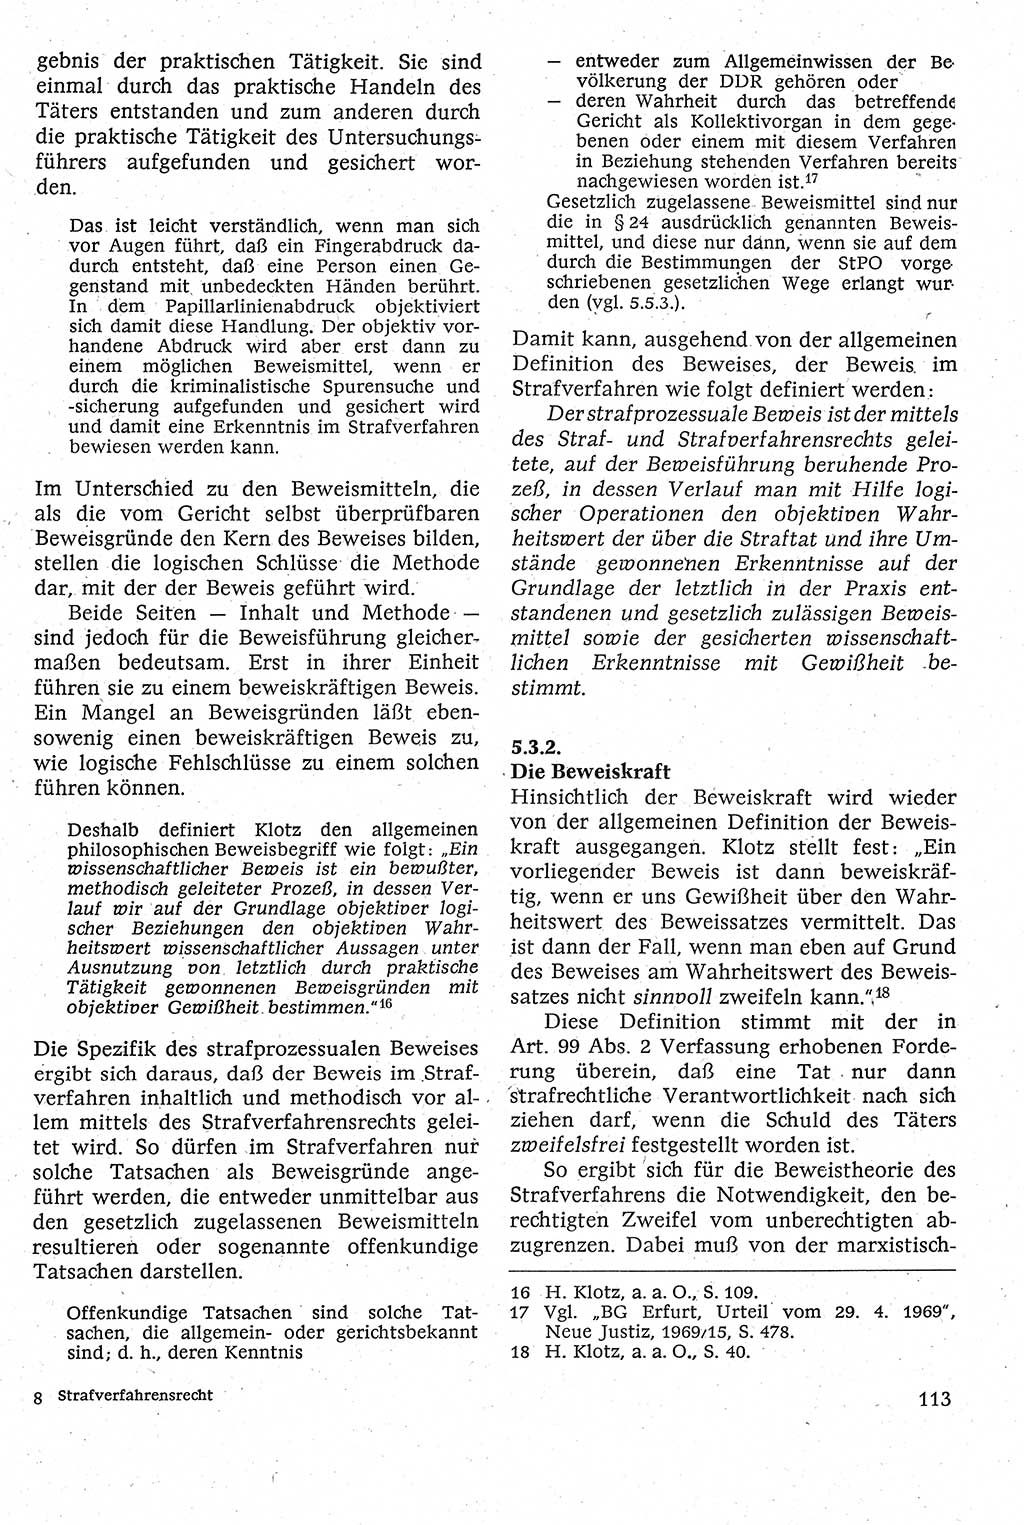 Strafverfahrensrecht [Deutsche Demokratische Republik (DDR)], Lehrbuch 1982, Seite 113 (Strafverf.-R. DDR Lb. 1982, S. 113)